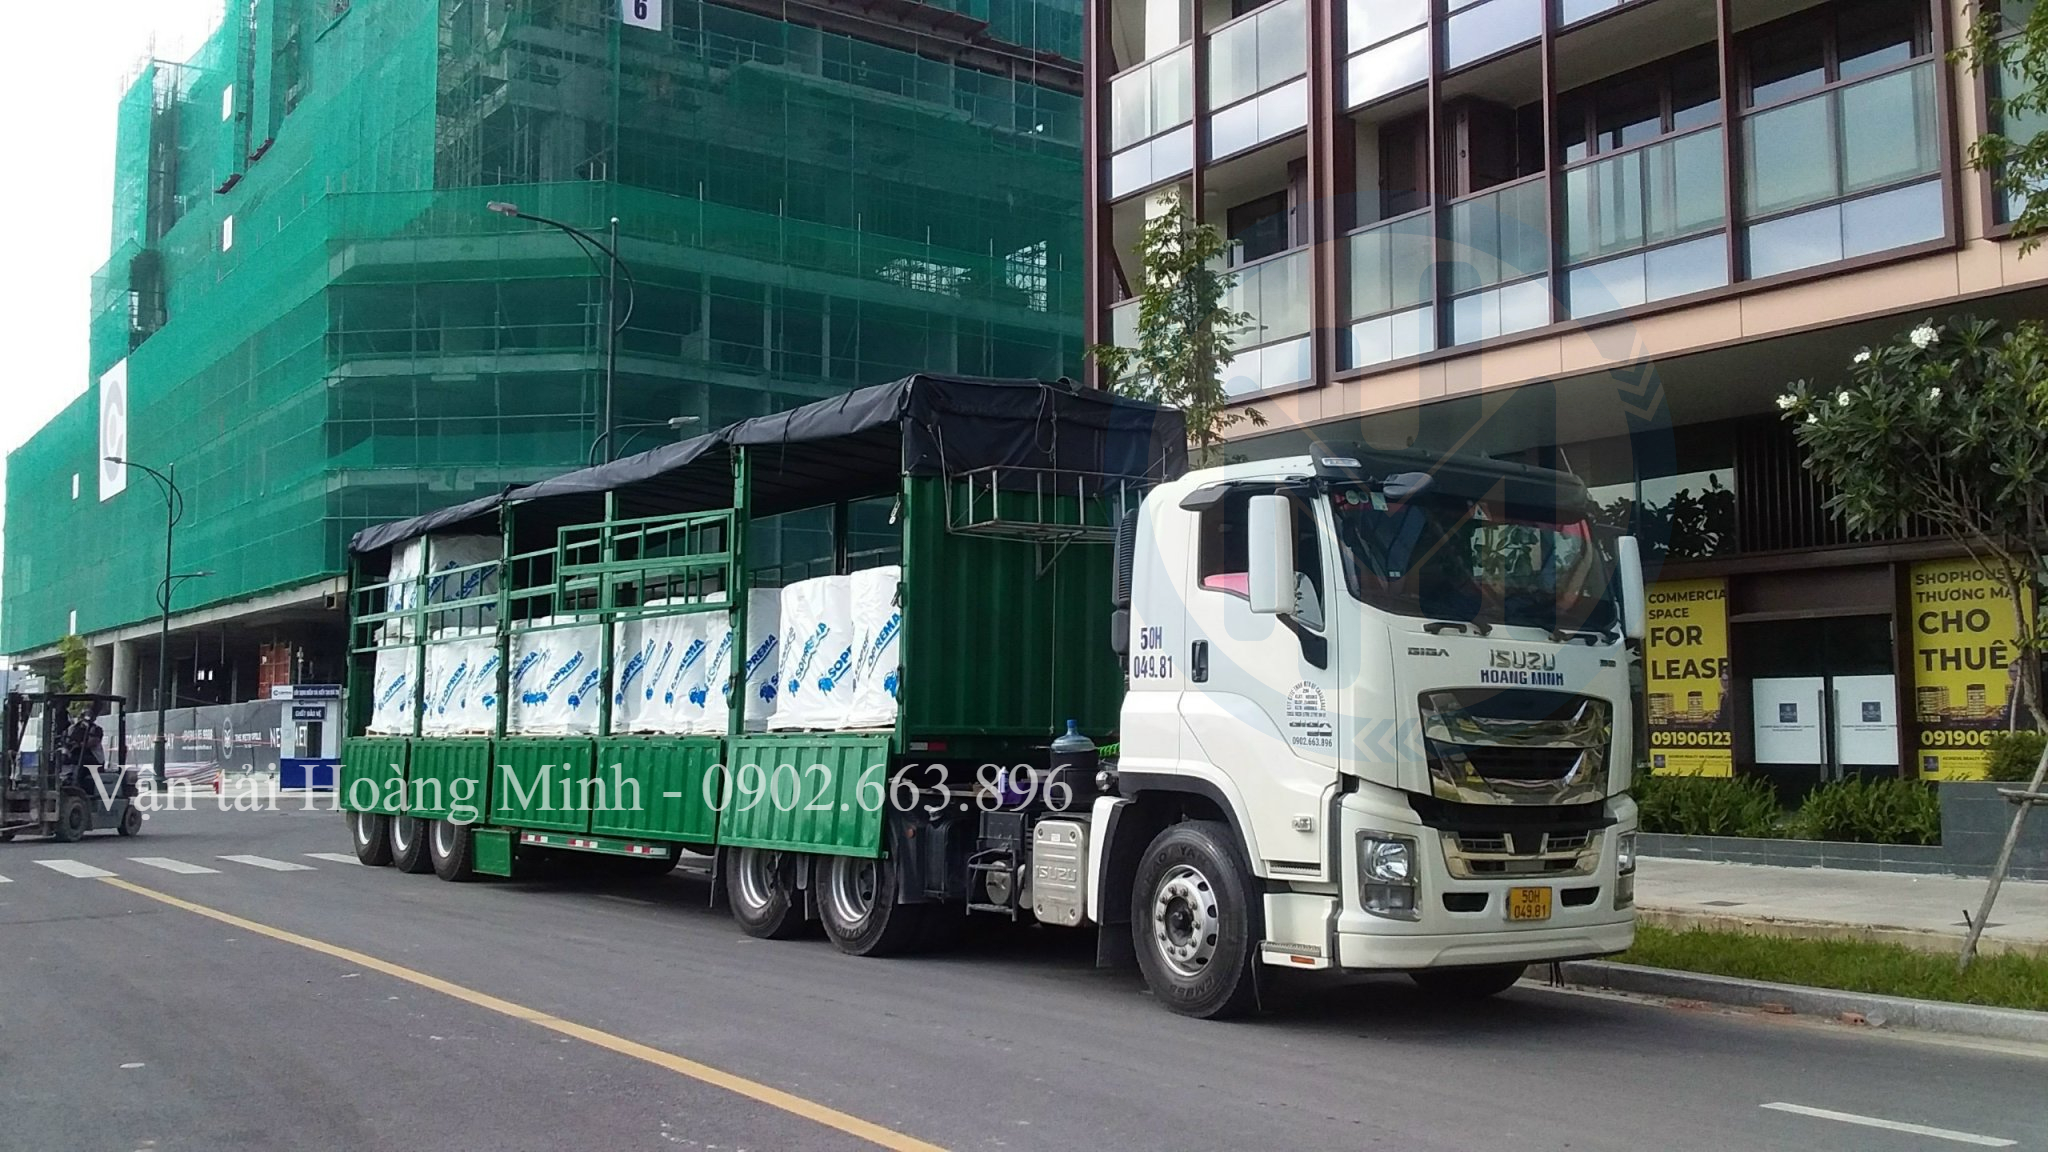 Các bước đặt thuê vận chuyển hàng hóa Huyện Cần Giờ của Vận tải Hoàng Minh.jpg